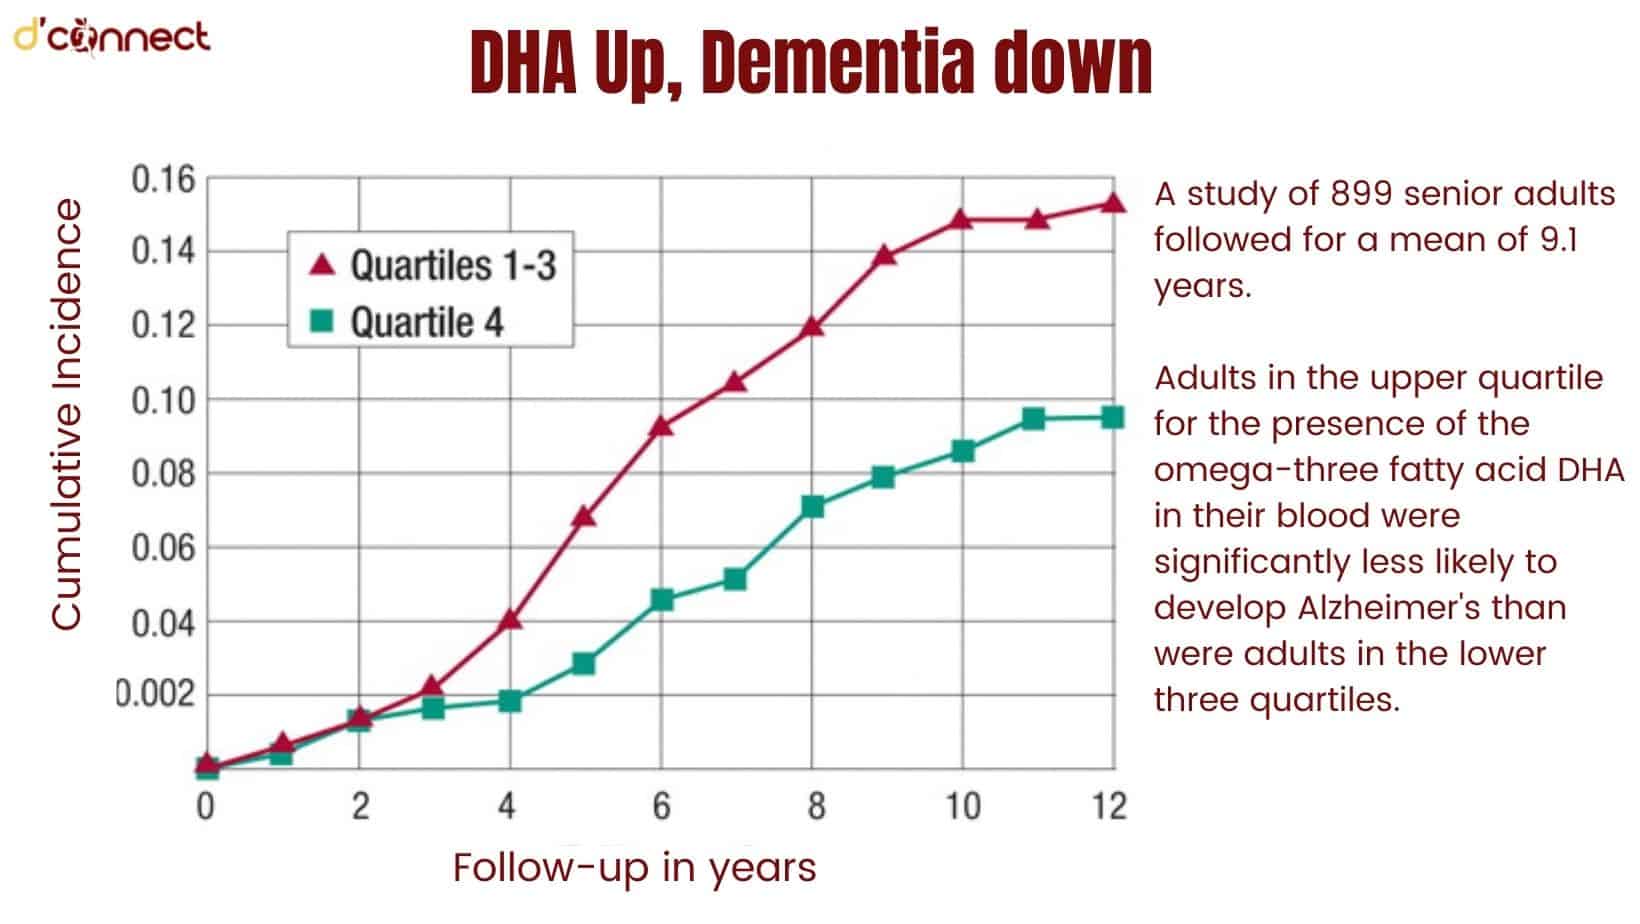 DHA Up, Dementia down